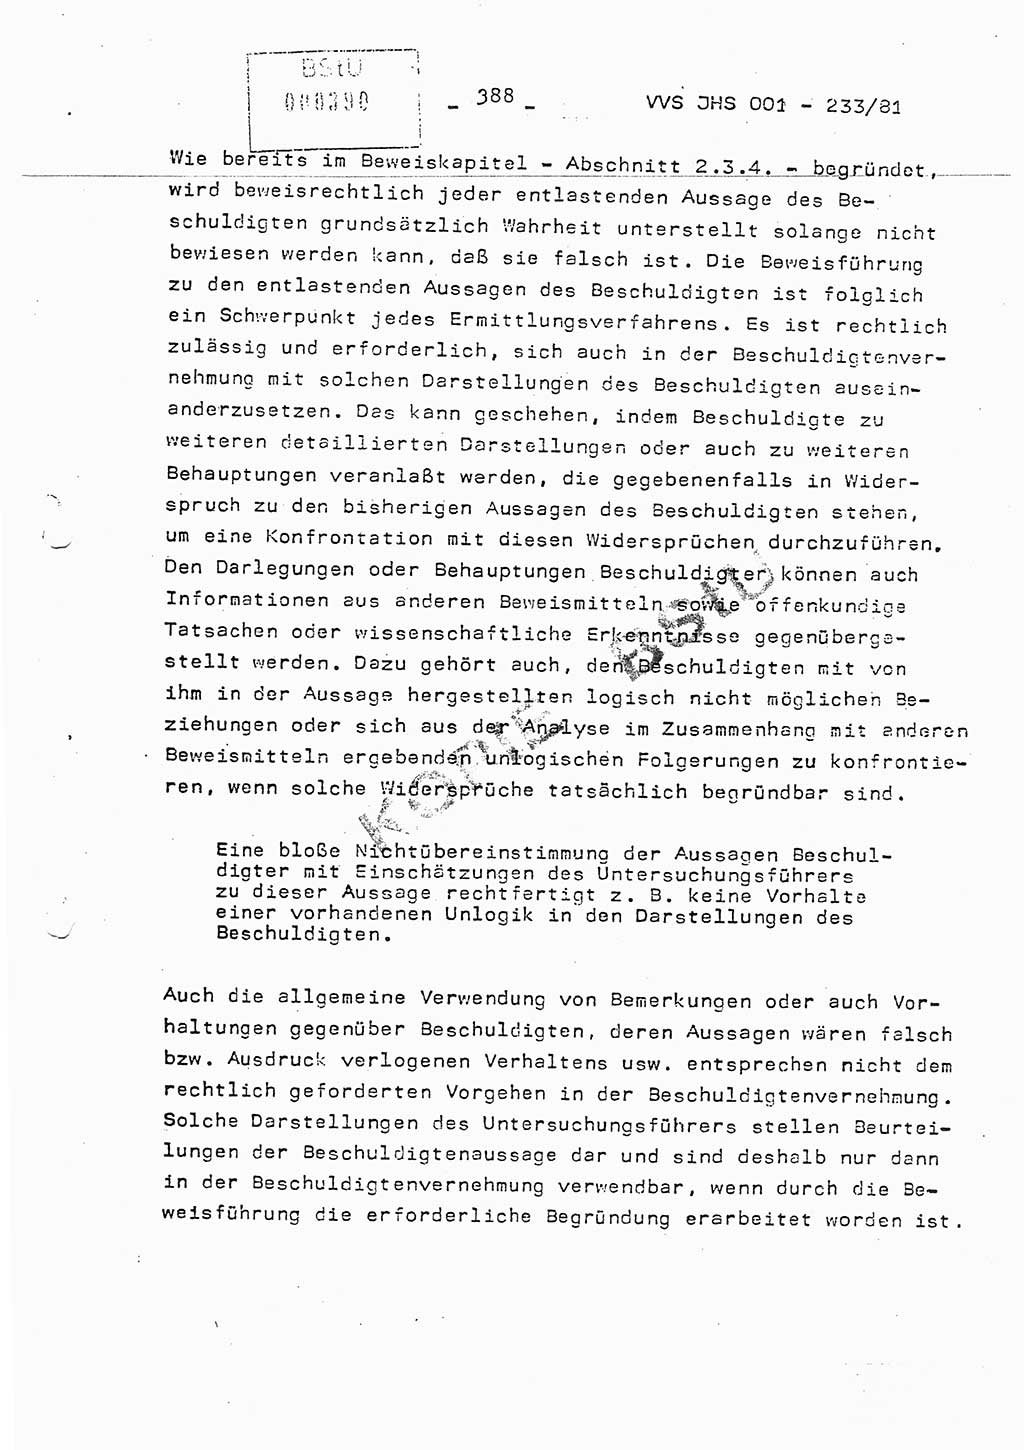 Dissertation Oberstleutnant Horst Zank (JHS), Oberstleutnant Dr. Karl-Heinz Knoblauch (JHS), Oberstleutnant Gustav-Adolf Kowalewski (HA Ⅸ), Oberstleutnant Wolfgang Plötner (HA Ⅸ), Ministerium für Staatssicherheit (MfS) [Deutsche Demokratische Republik (DDR)], Juristische Hochschule (JHS), Vertrauliche Verschlußsache (VVS) o001-233/81, Potsdam 1981, Blatt 388 (Diss. MfS DDR JHS VVS o001-233/81 1981, Bl. 388)